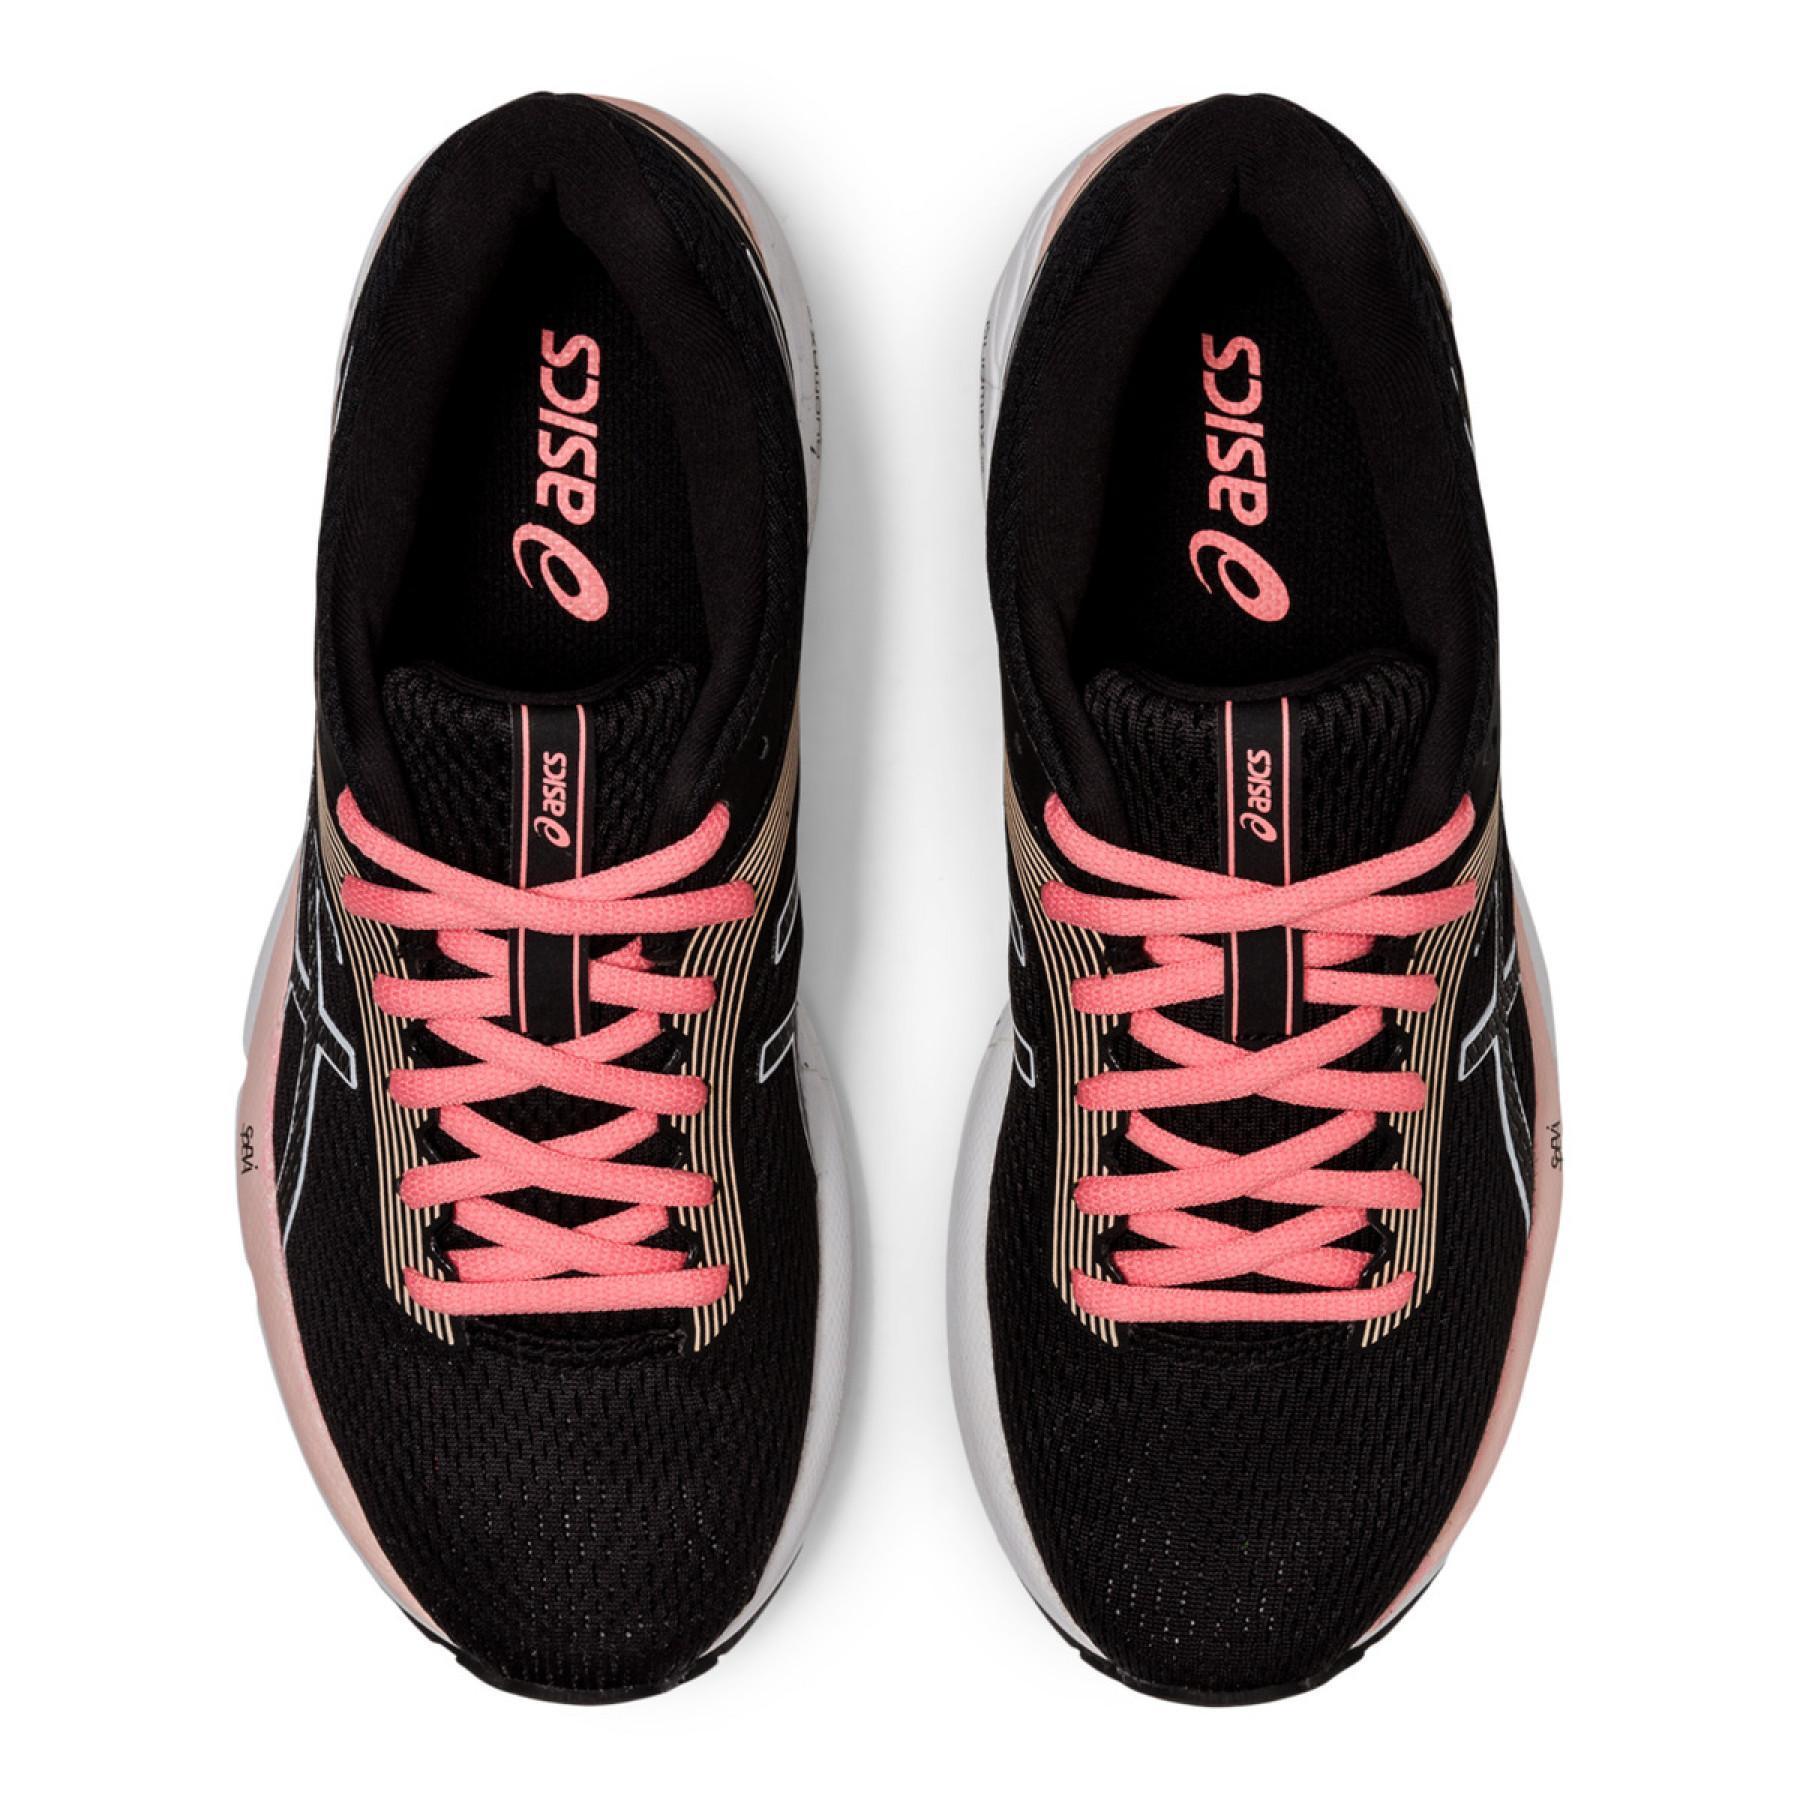 Chaussures de running femme Asics Gel-Zone 7